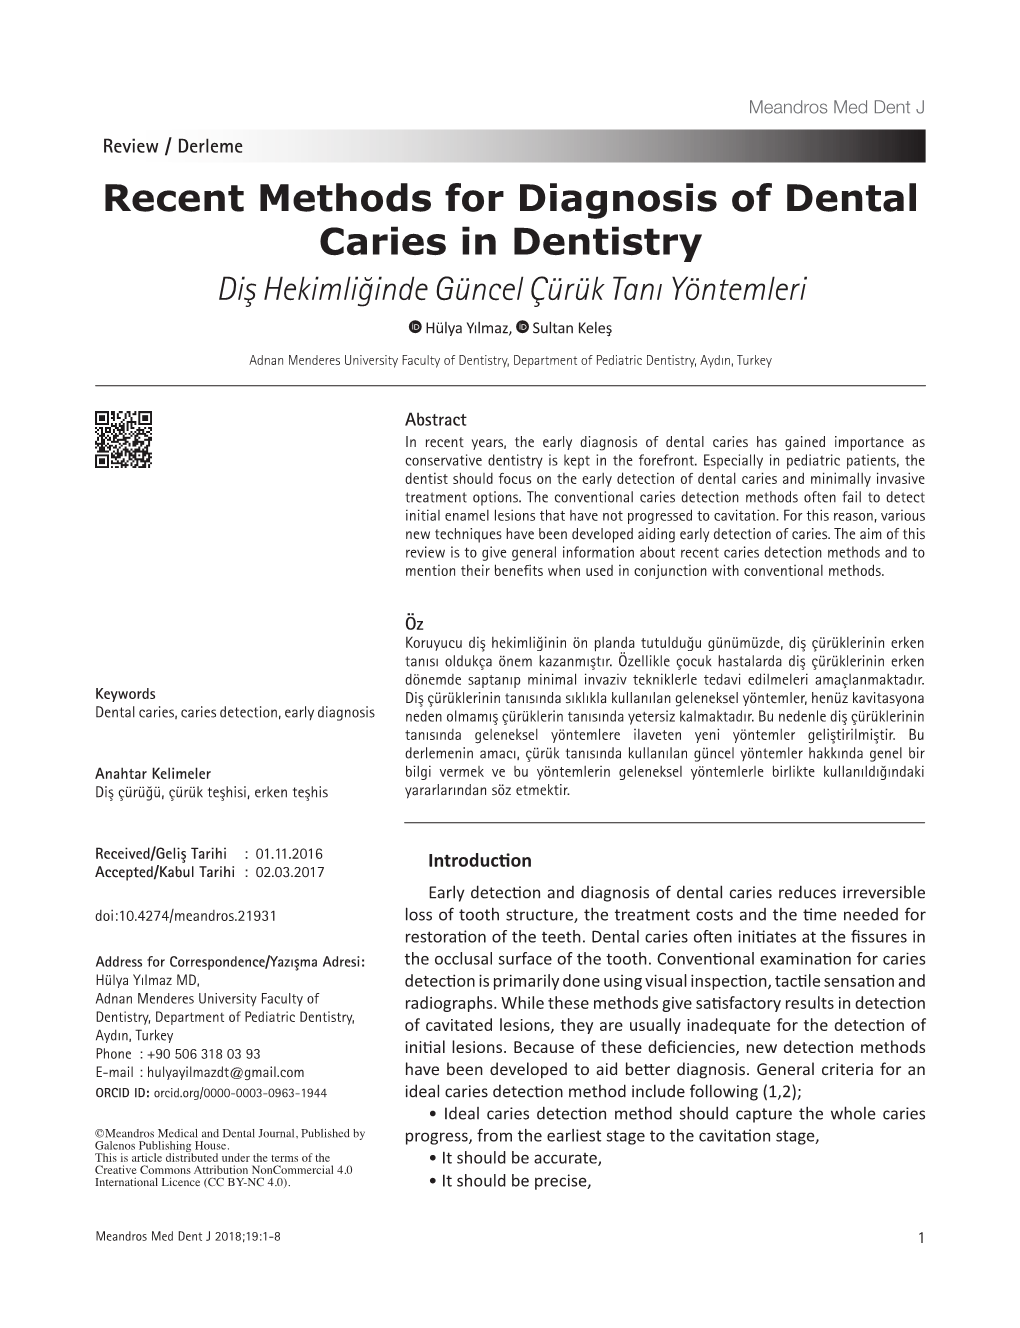 Recent Methods for Diagnosis of Dental Caries in Dentistry Diş Hekimliğinde Güncel Çürük Tanı Yöntemleri Hülya Yılmaz, Sultan Keleş